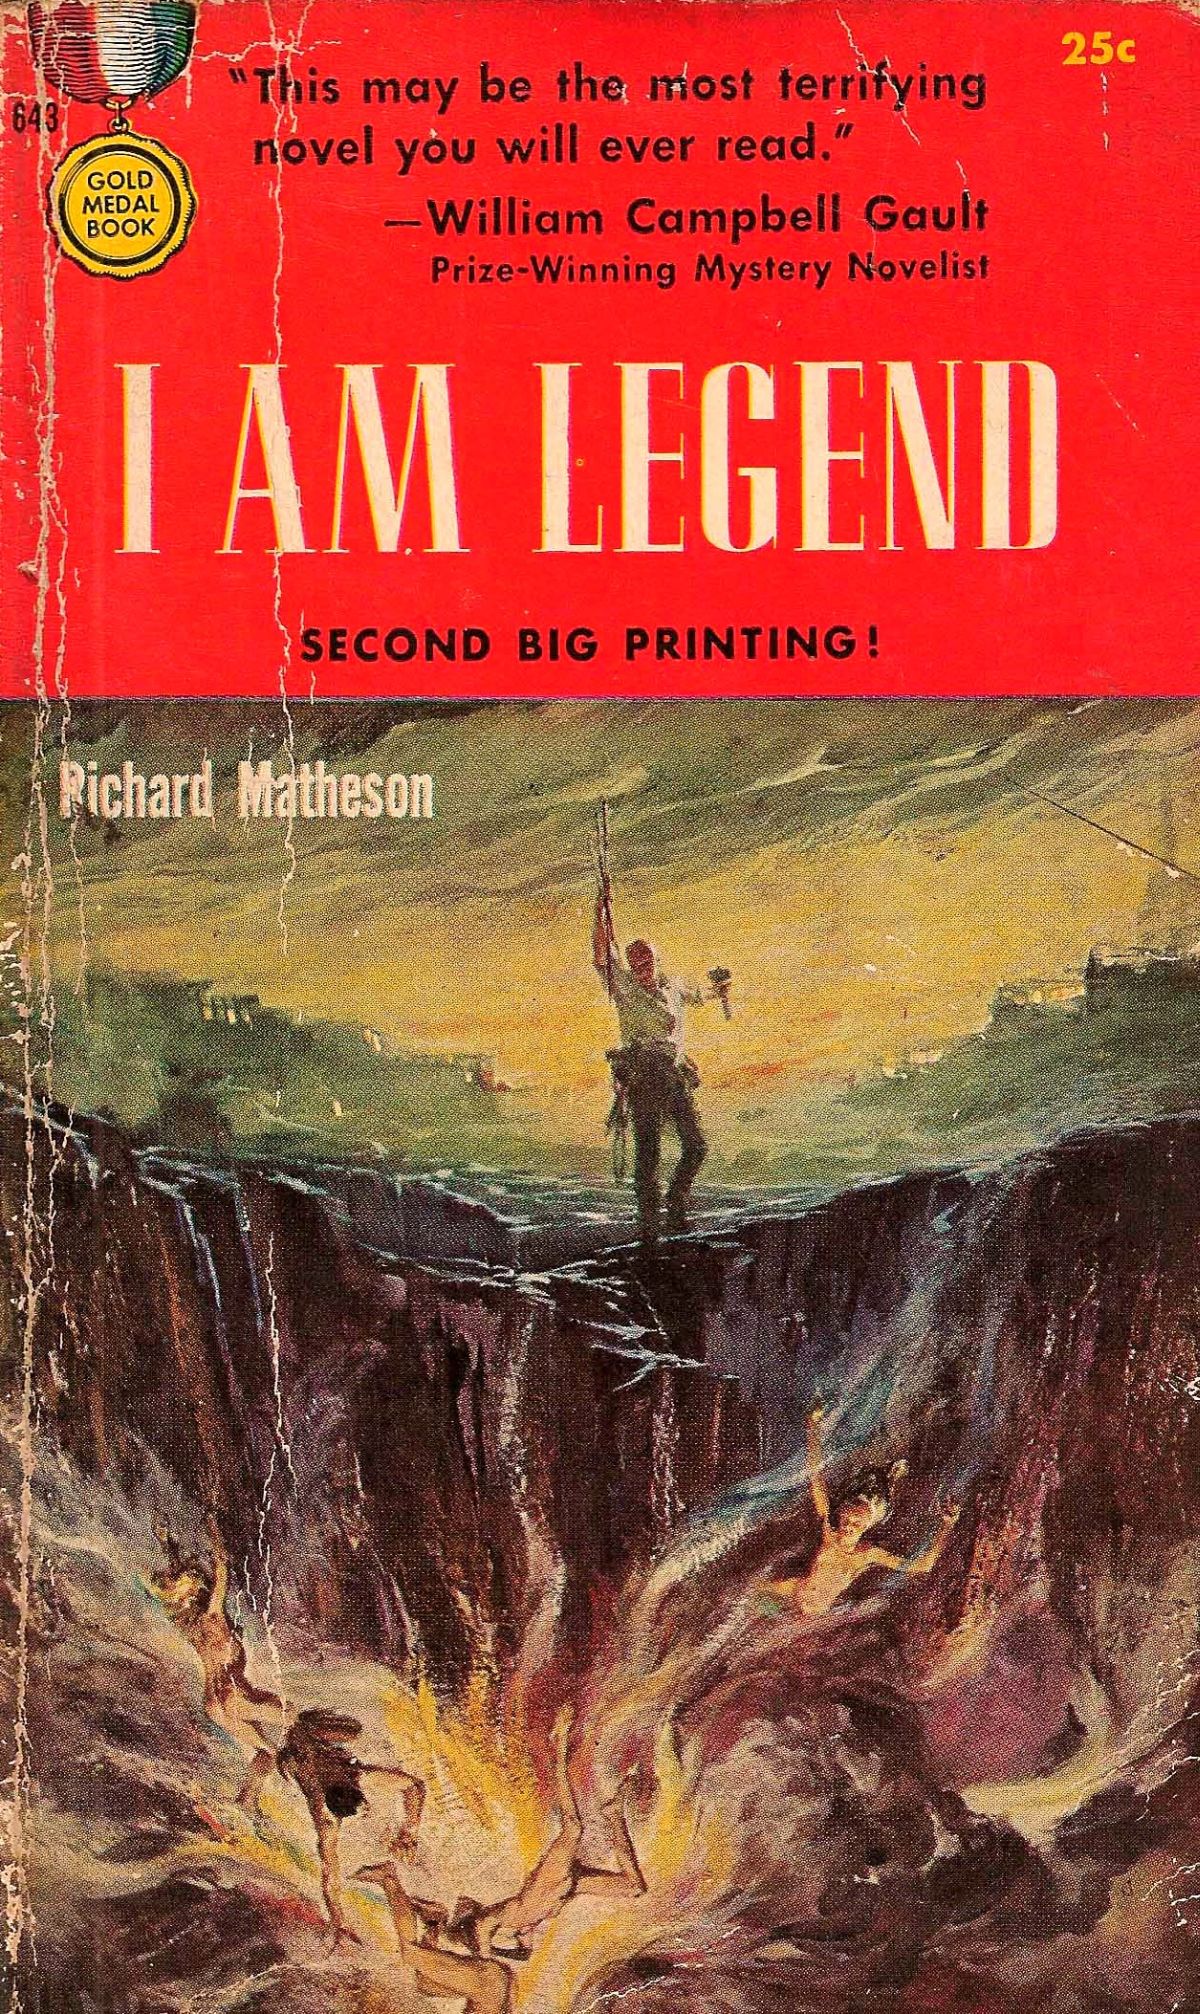 "Jestem legendą" - powstanie nowa adaptacja książki o ostatnim człowieku na ziemi